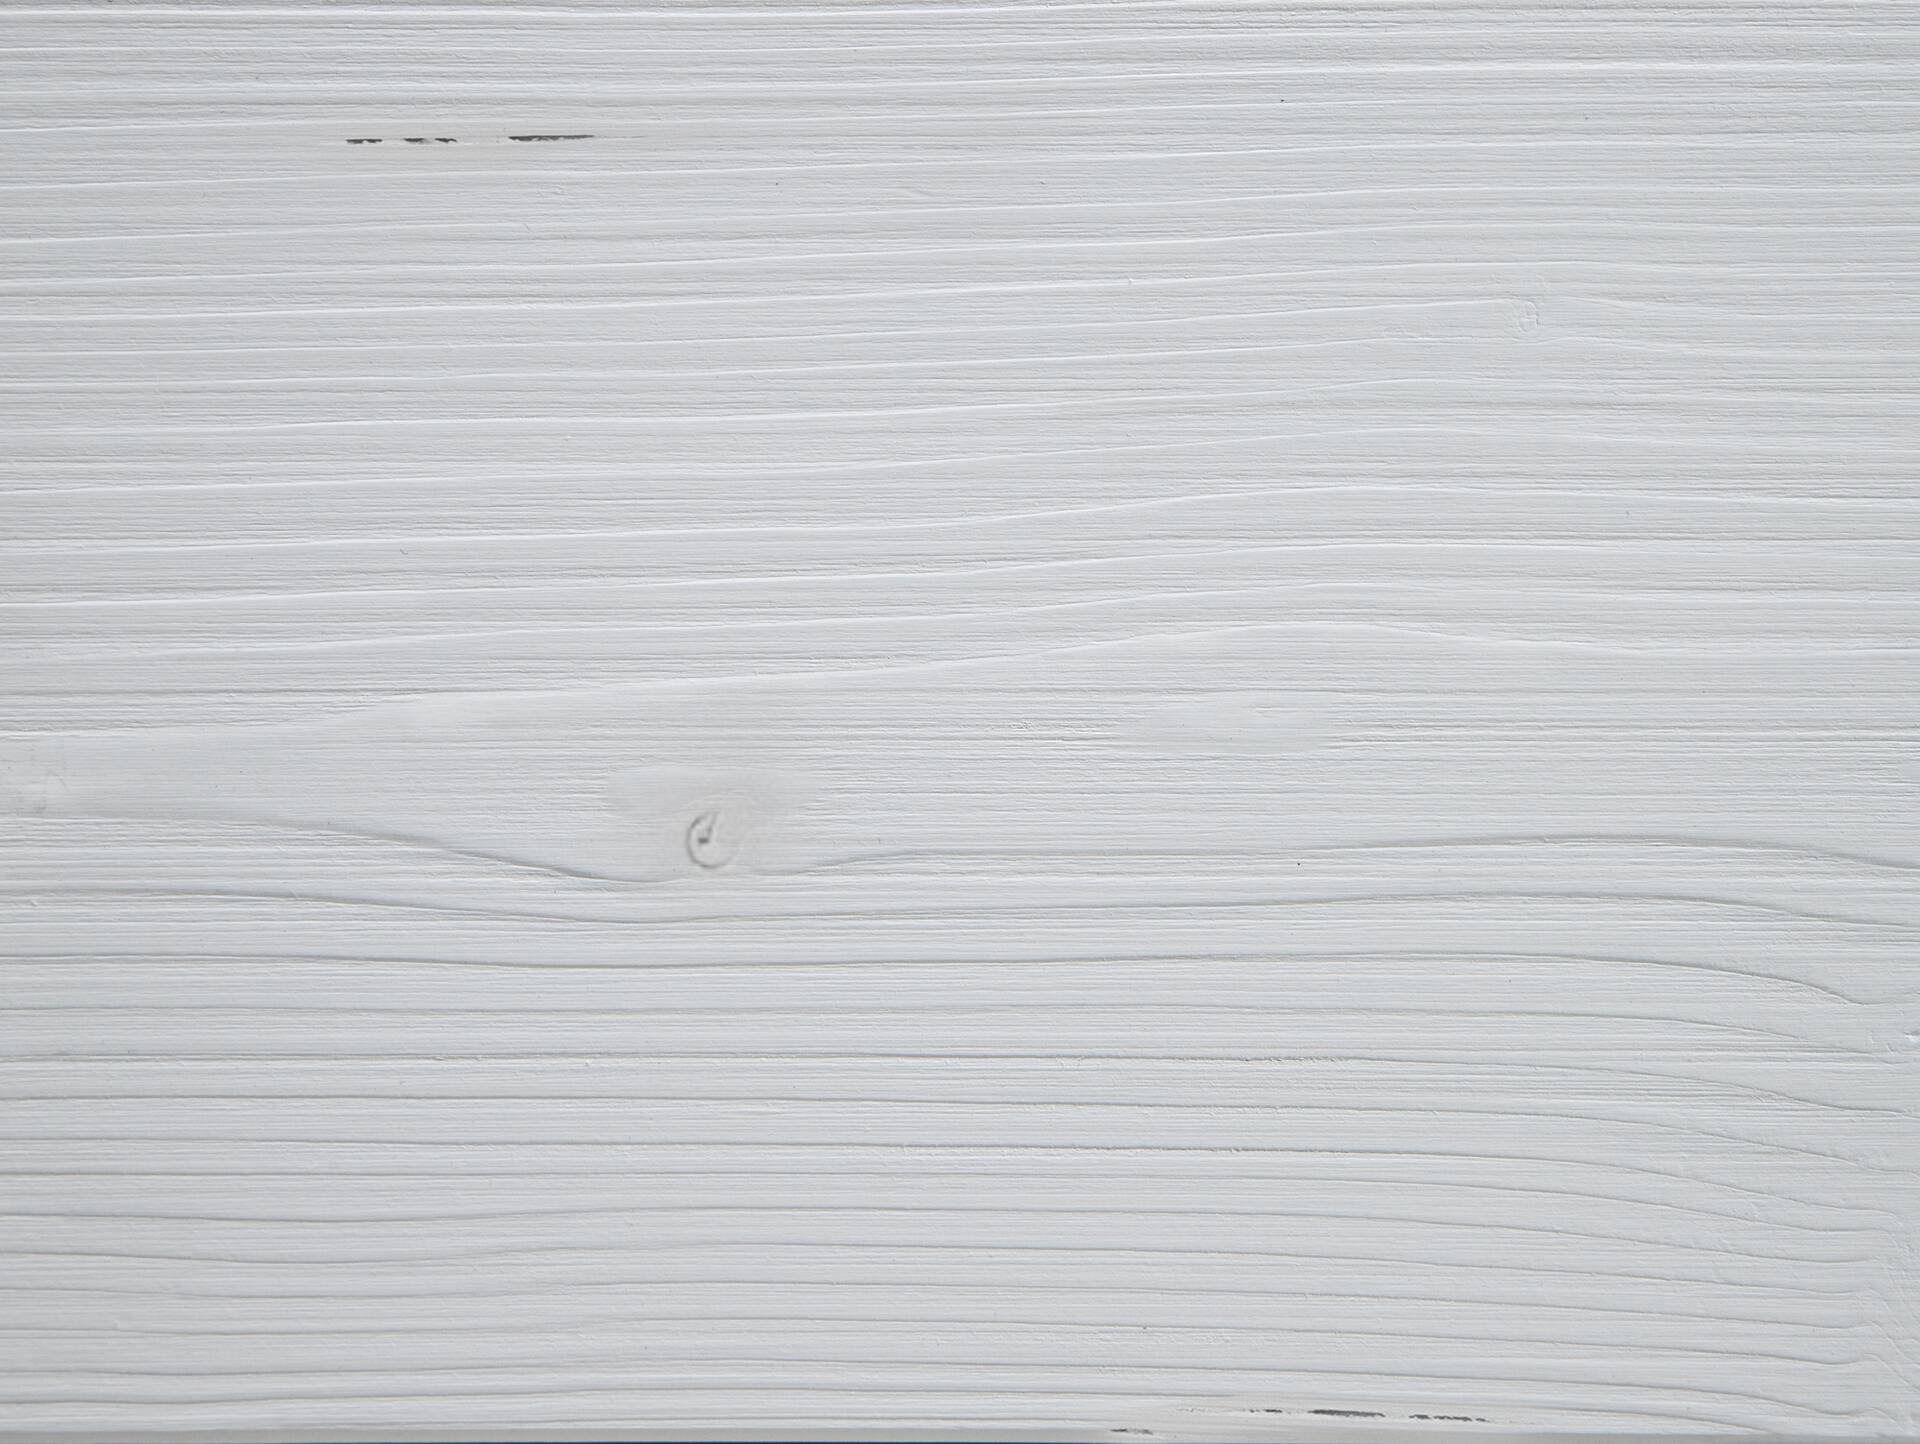 LUKY Bett Metallfuß, mit Polsterkopfteil, Material Massivholz, Fichte massiv 160 x 200 cm | weiss | Stoff Braun